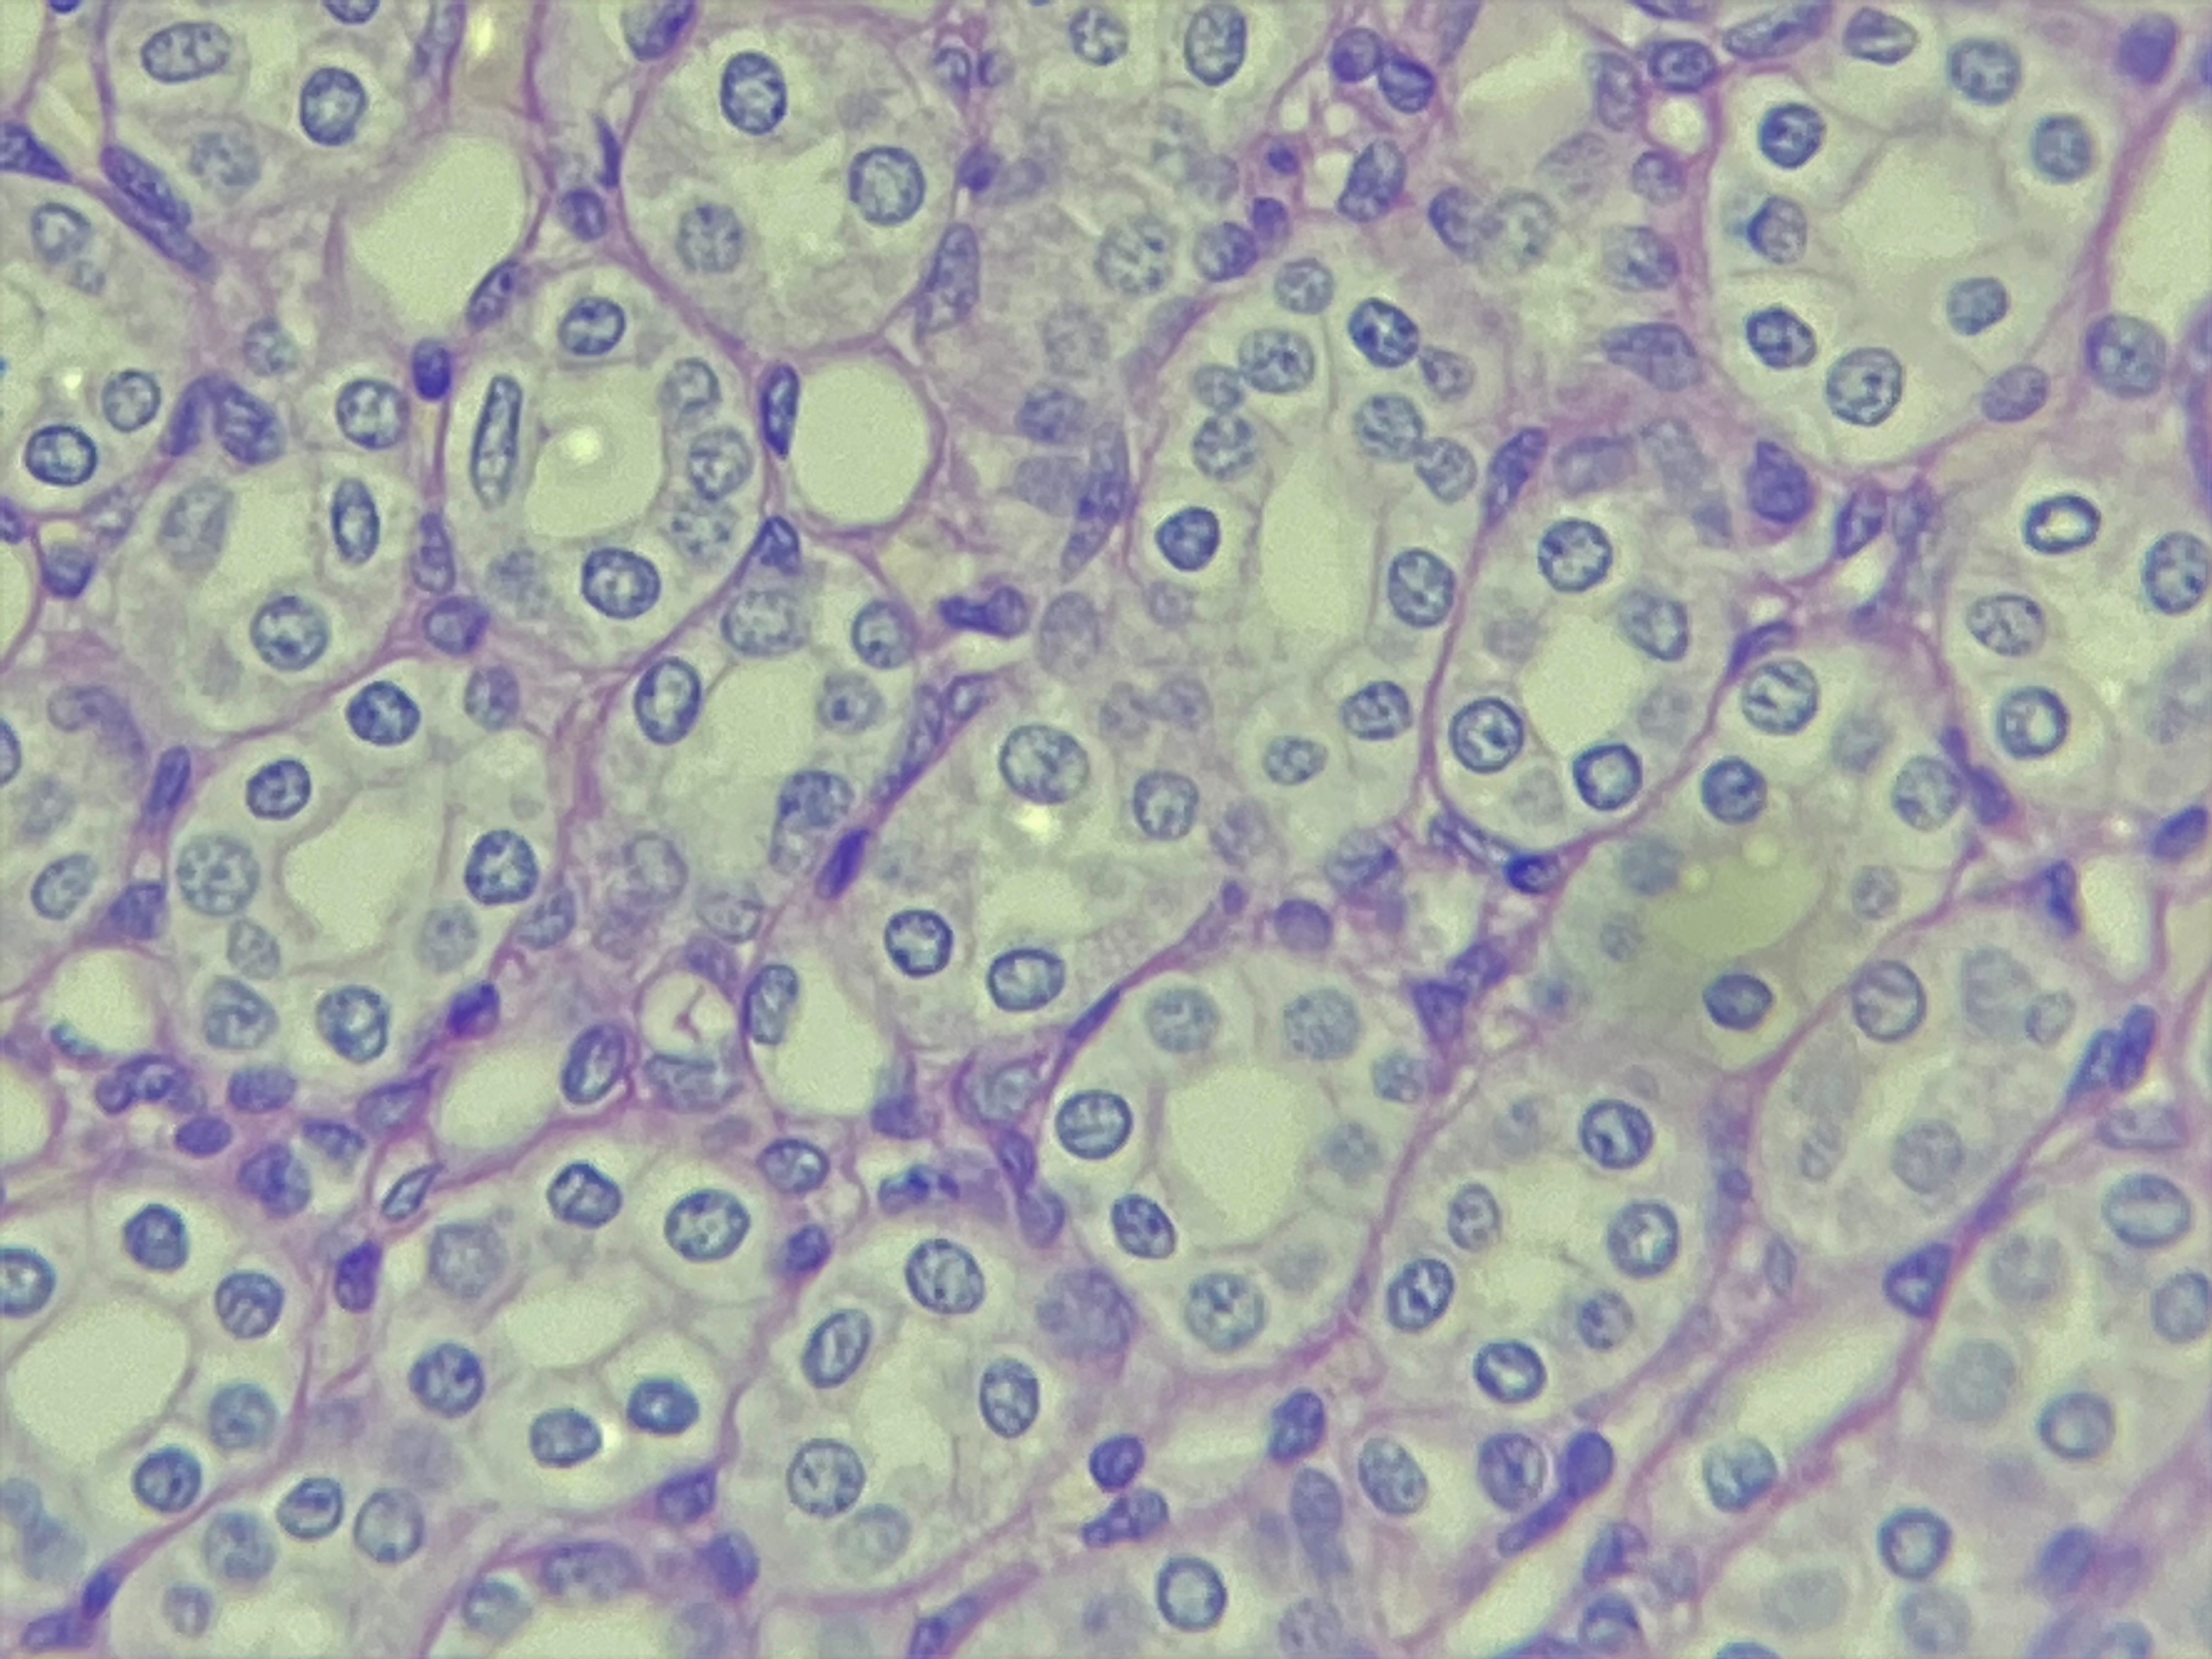 Lâmina: Rim - Túbulos renais (H&E - Aumento: 400x). Túbulos renais seccionados transversalmente.  Revestidos por epitélio simples cúbico, identificado por seus núcleos arredondados e por meio de suas células com dimensões similares.